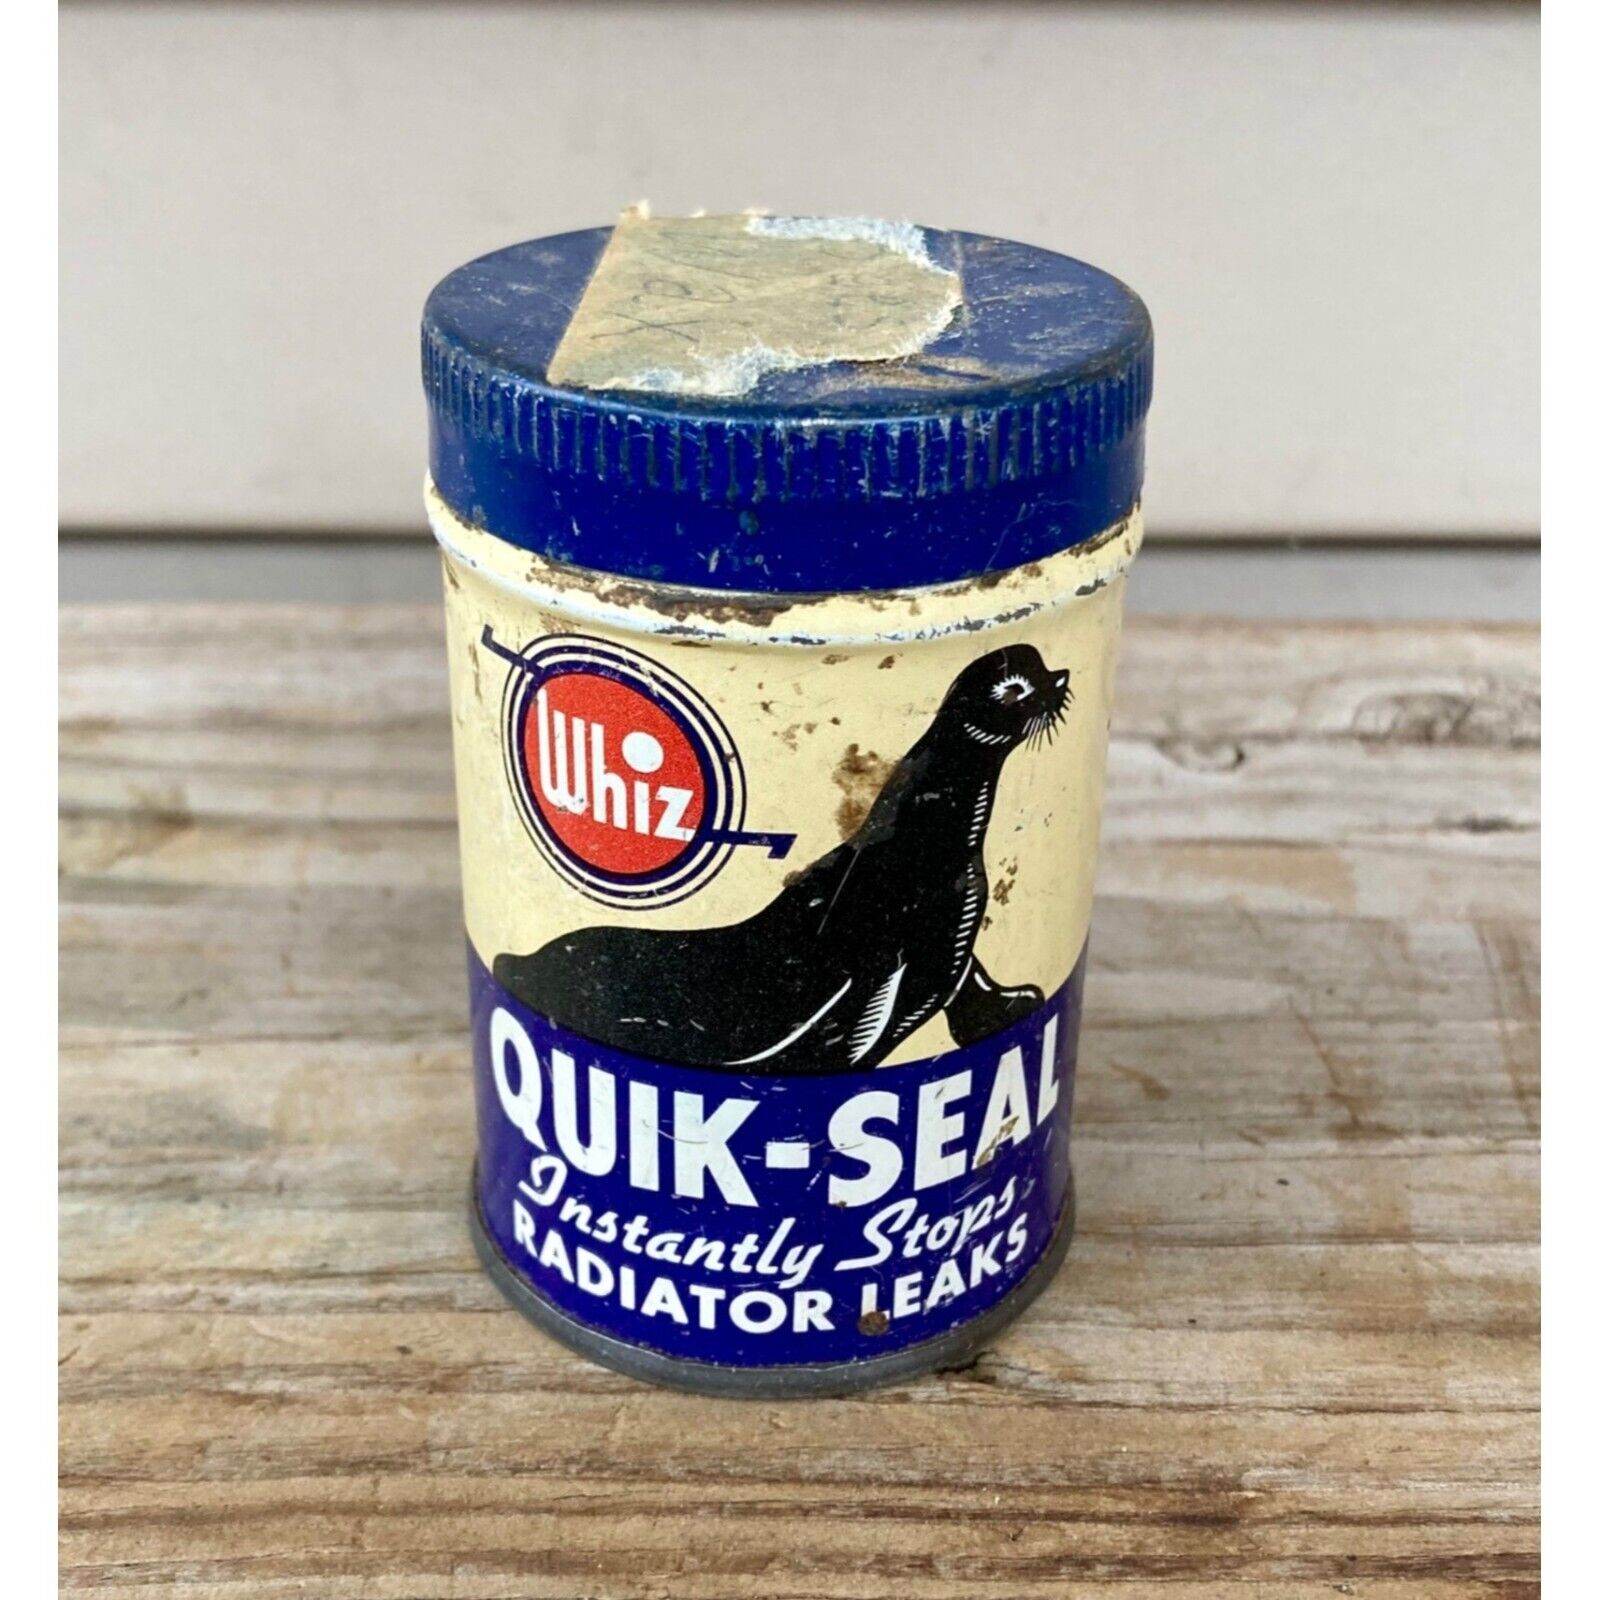 Vintage Whiz Quik-Seal Radiator Leak Tin Can